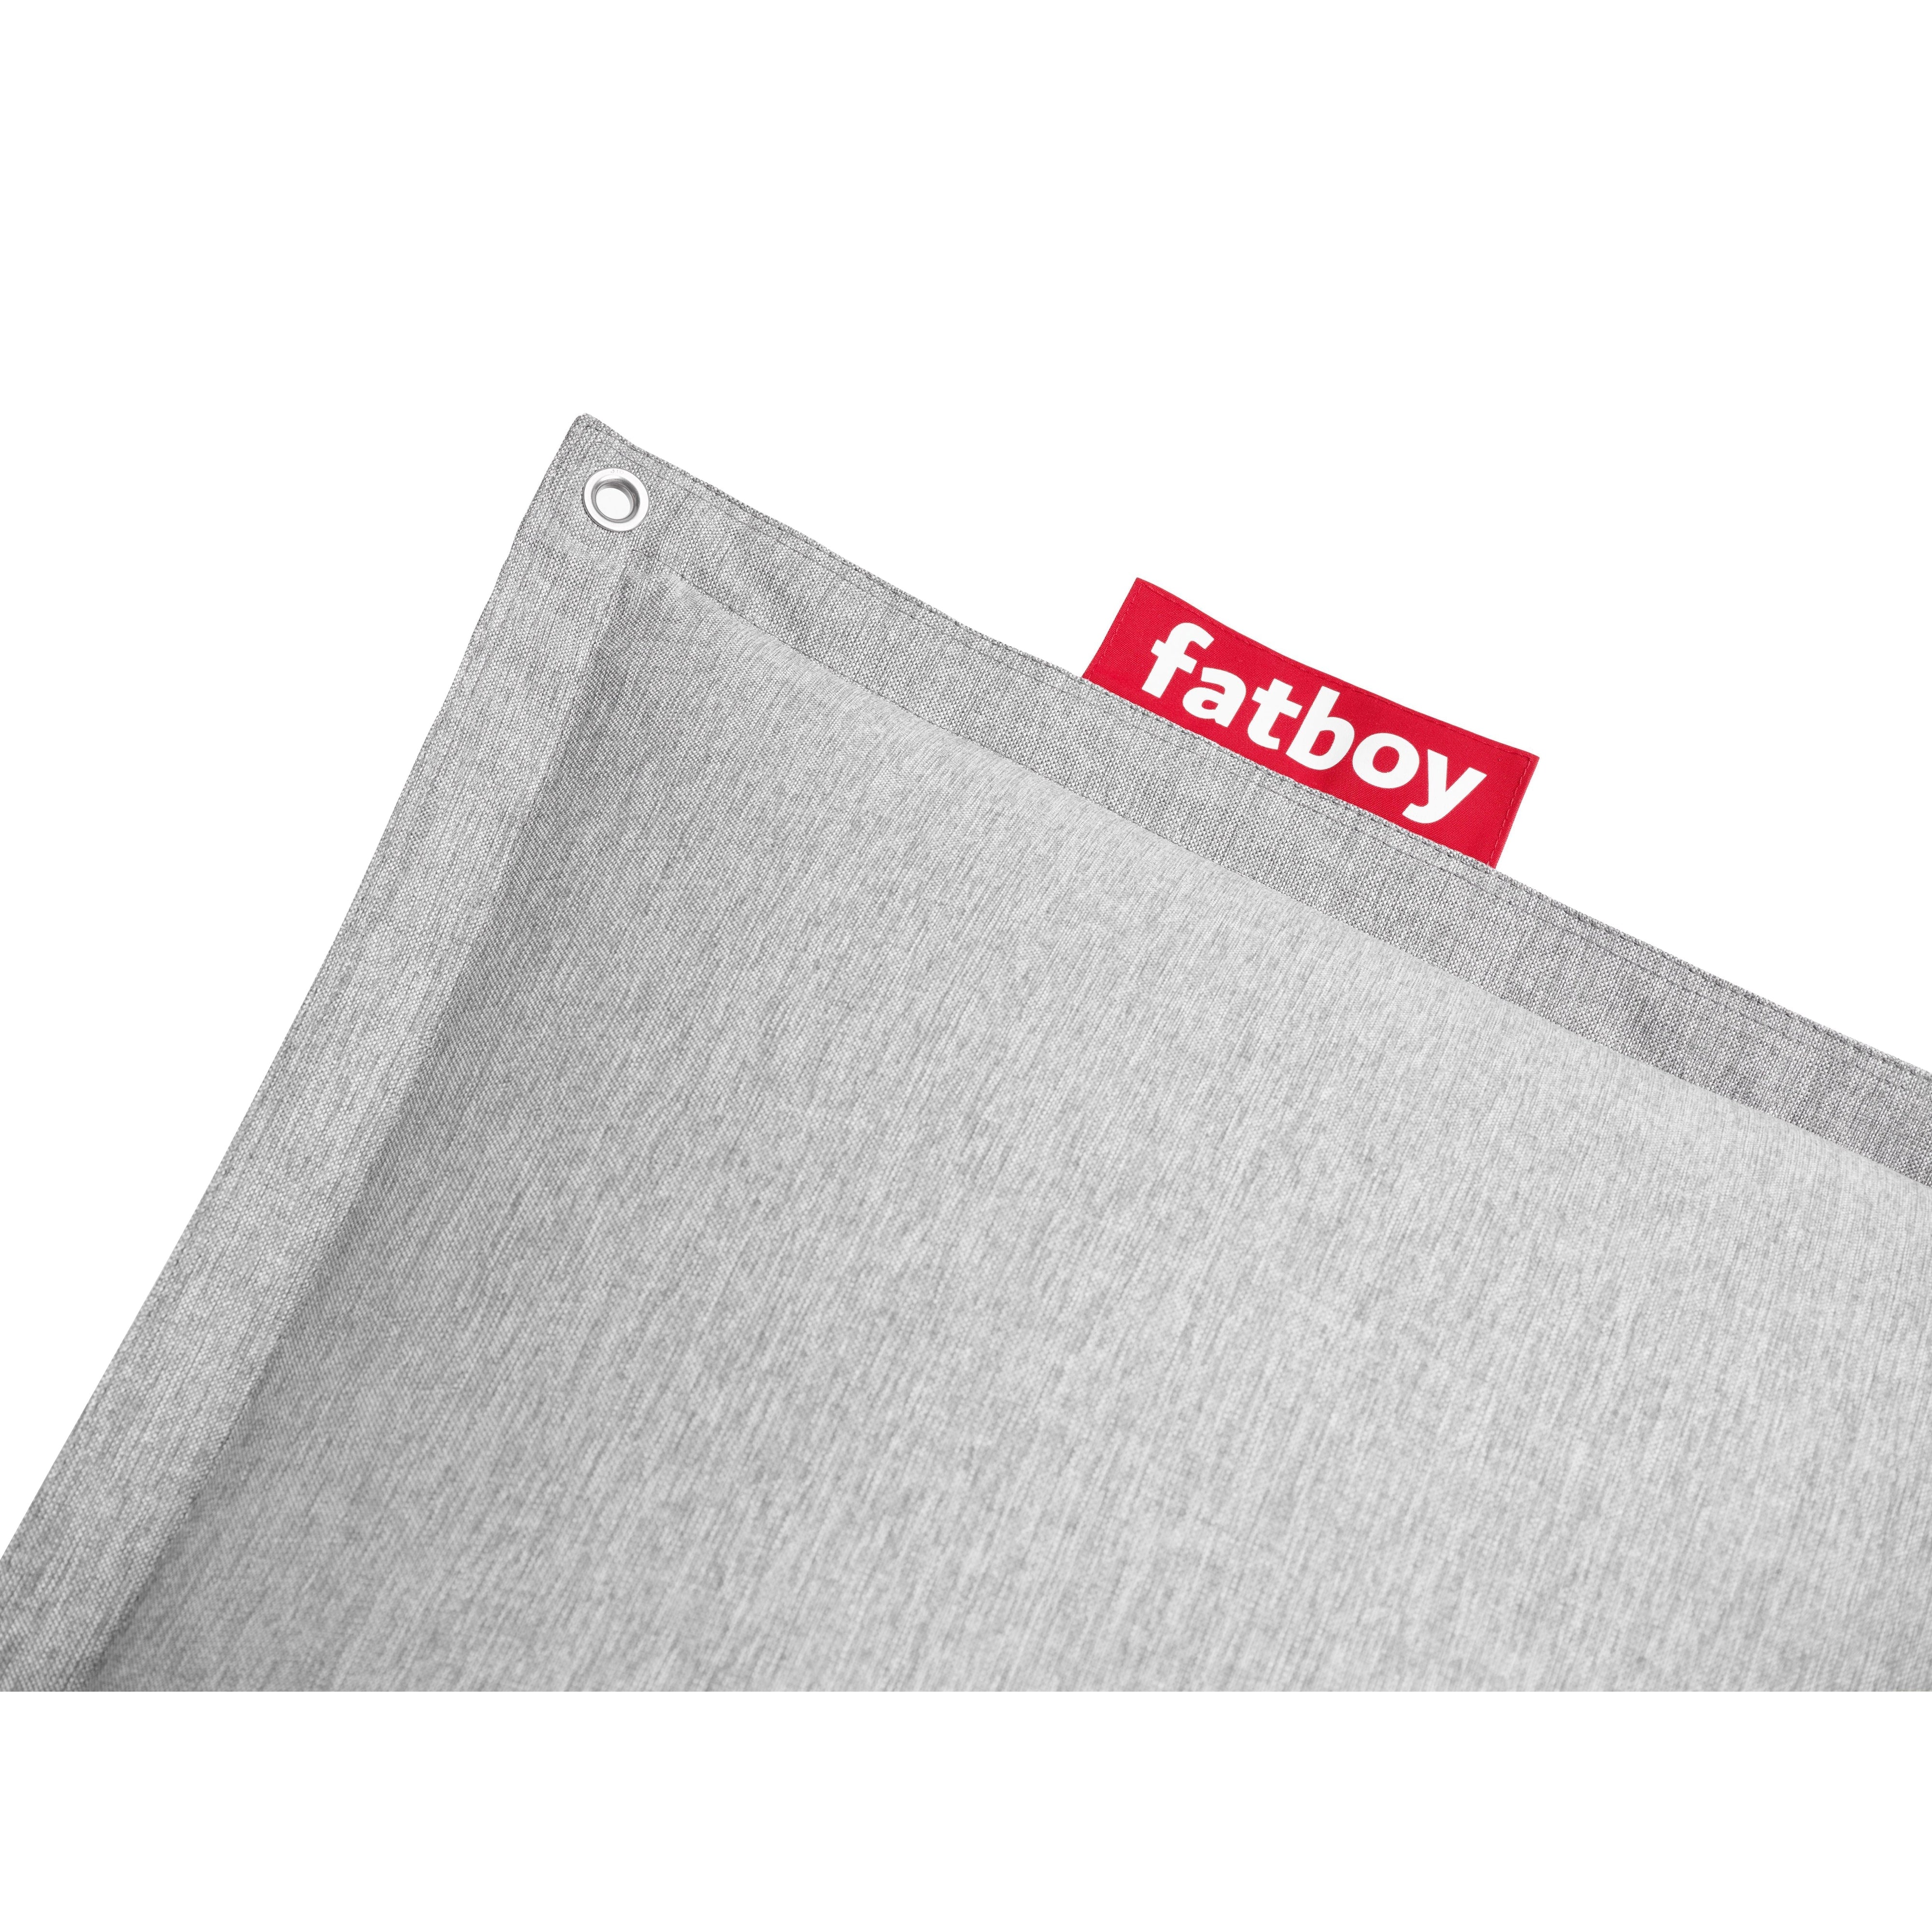 Fatboy Original Floatzac Beanbag, Stone Gray